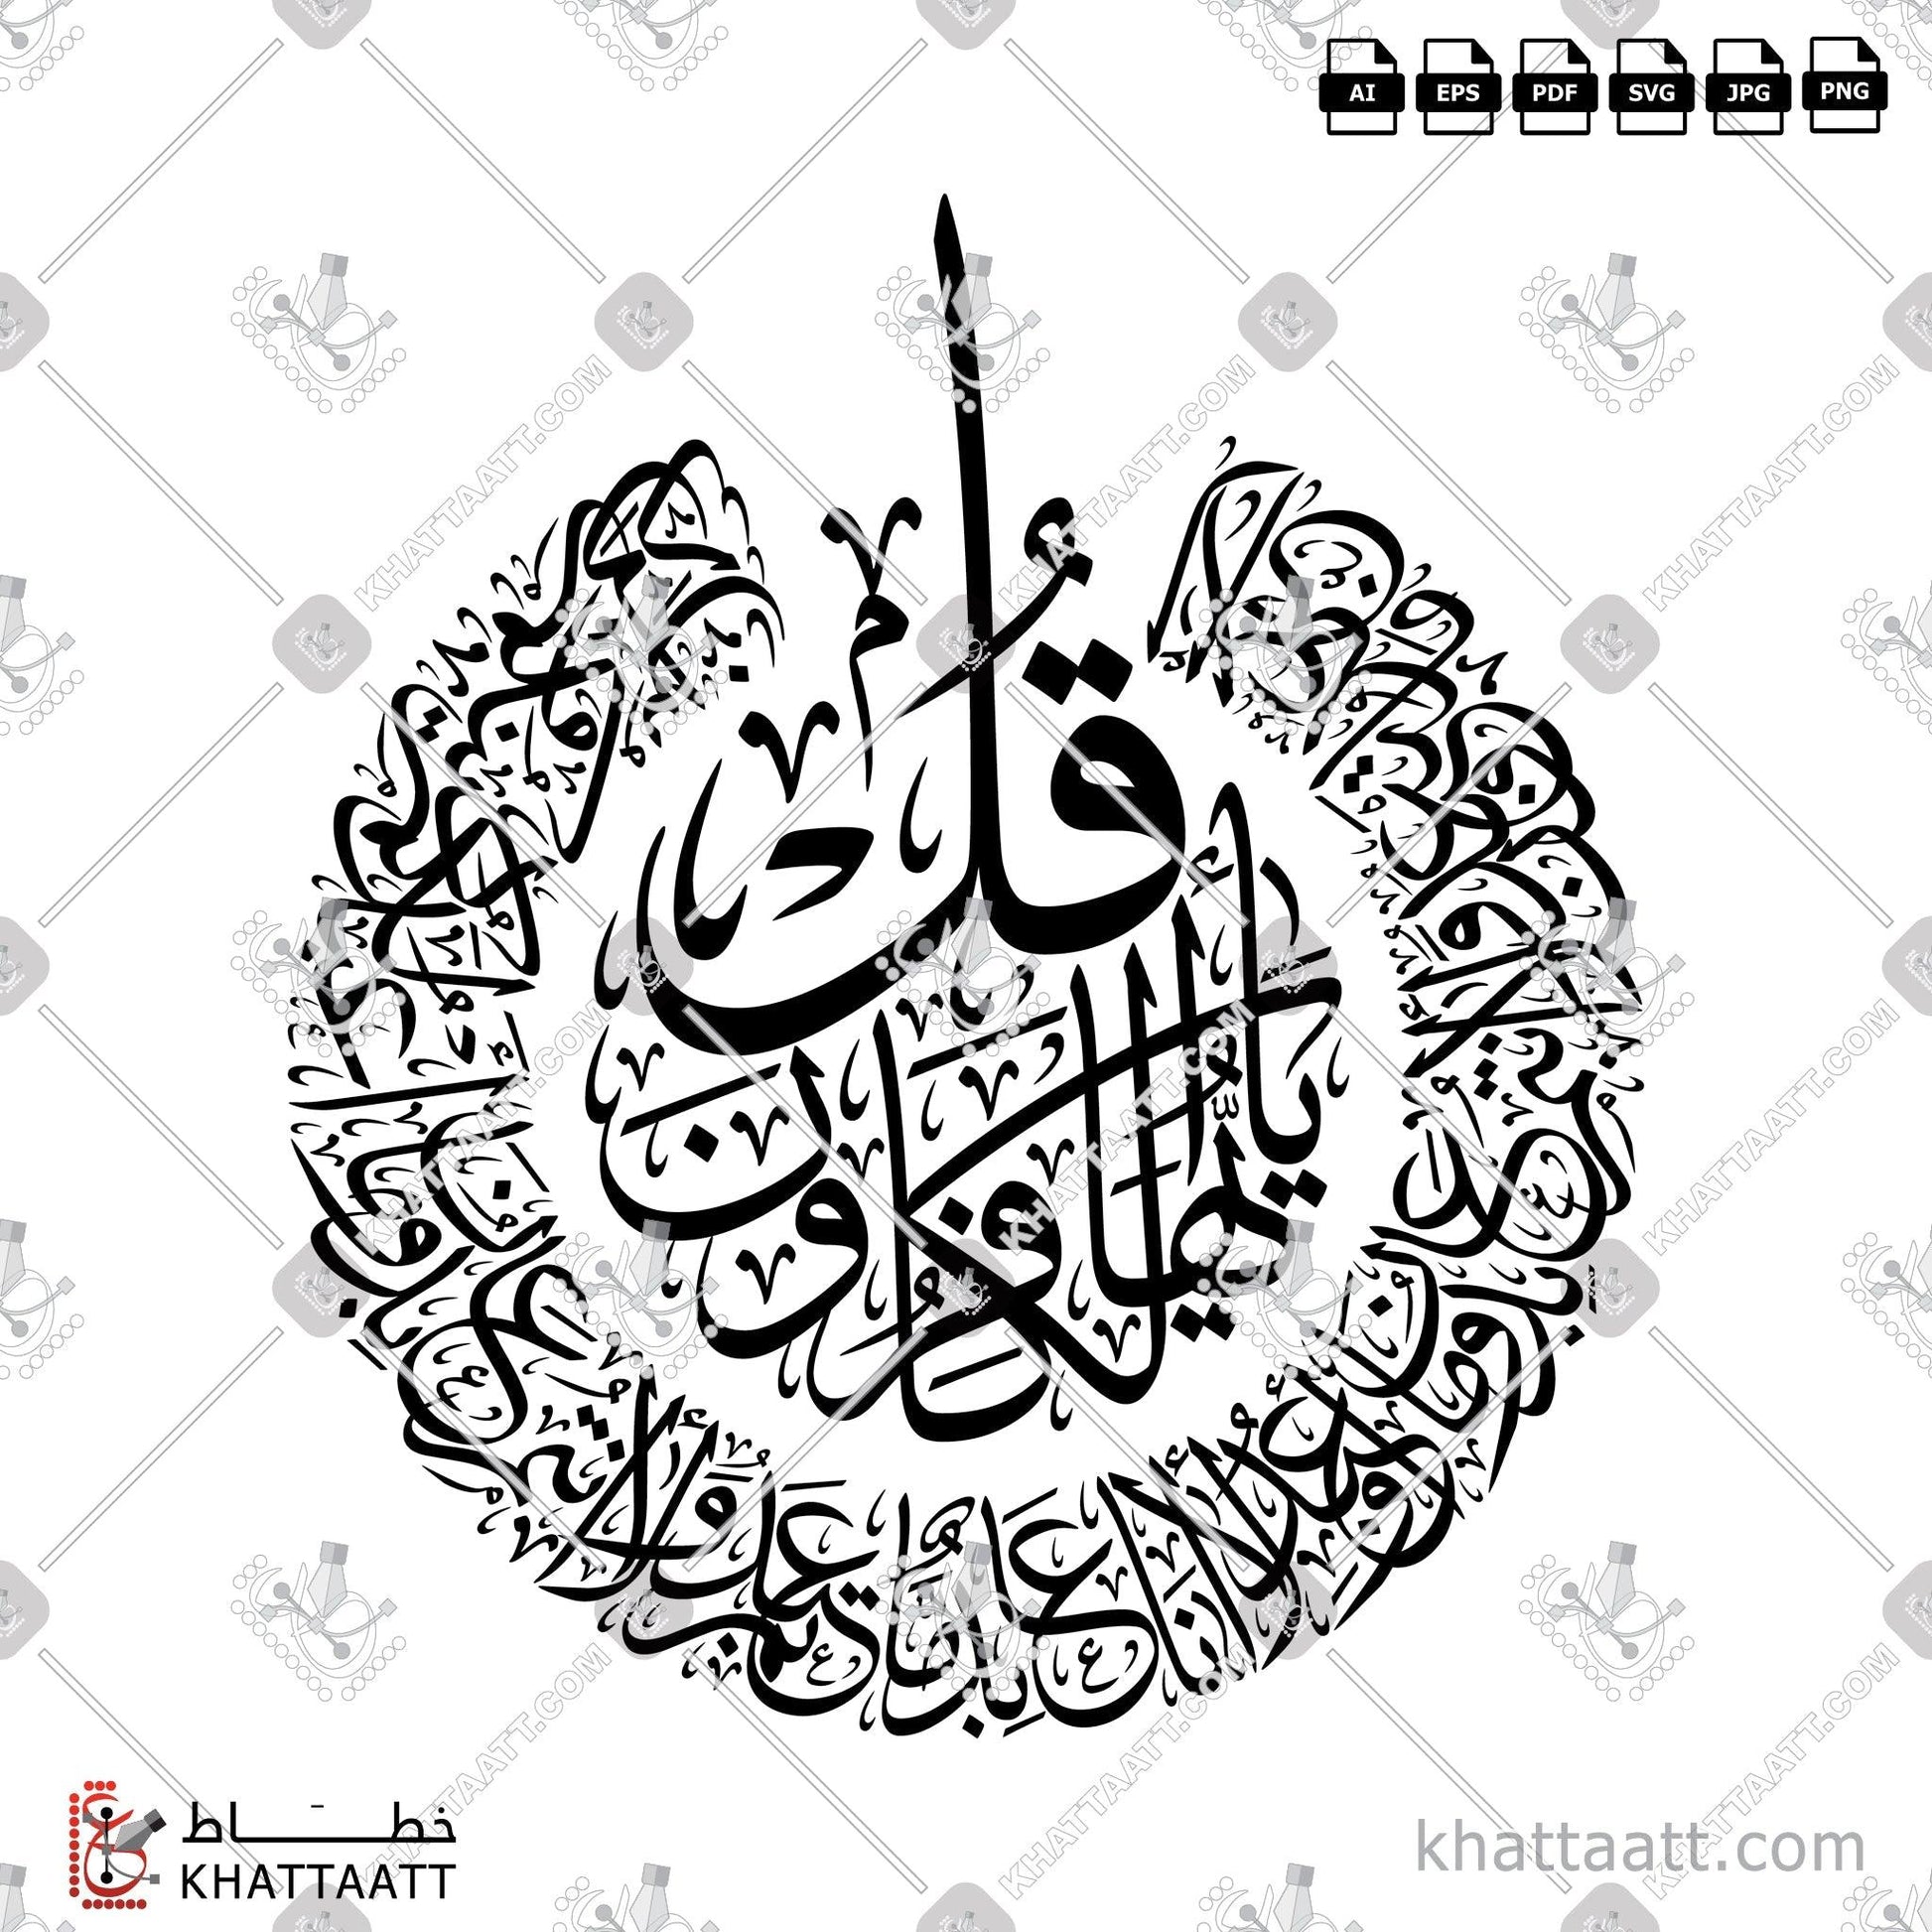 Digital Arabic calligraphy vector of Surat Al-Kafirun - سورة الكافرون in Thuluth - خط الثلث